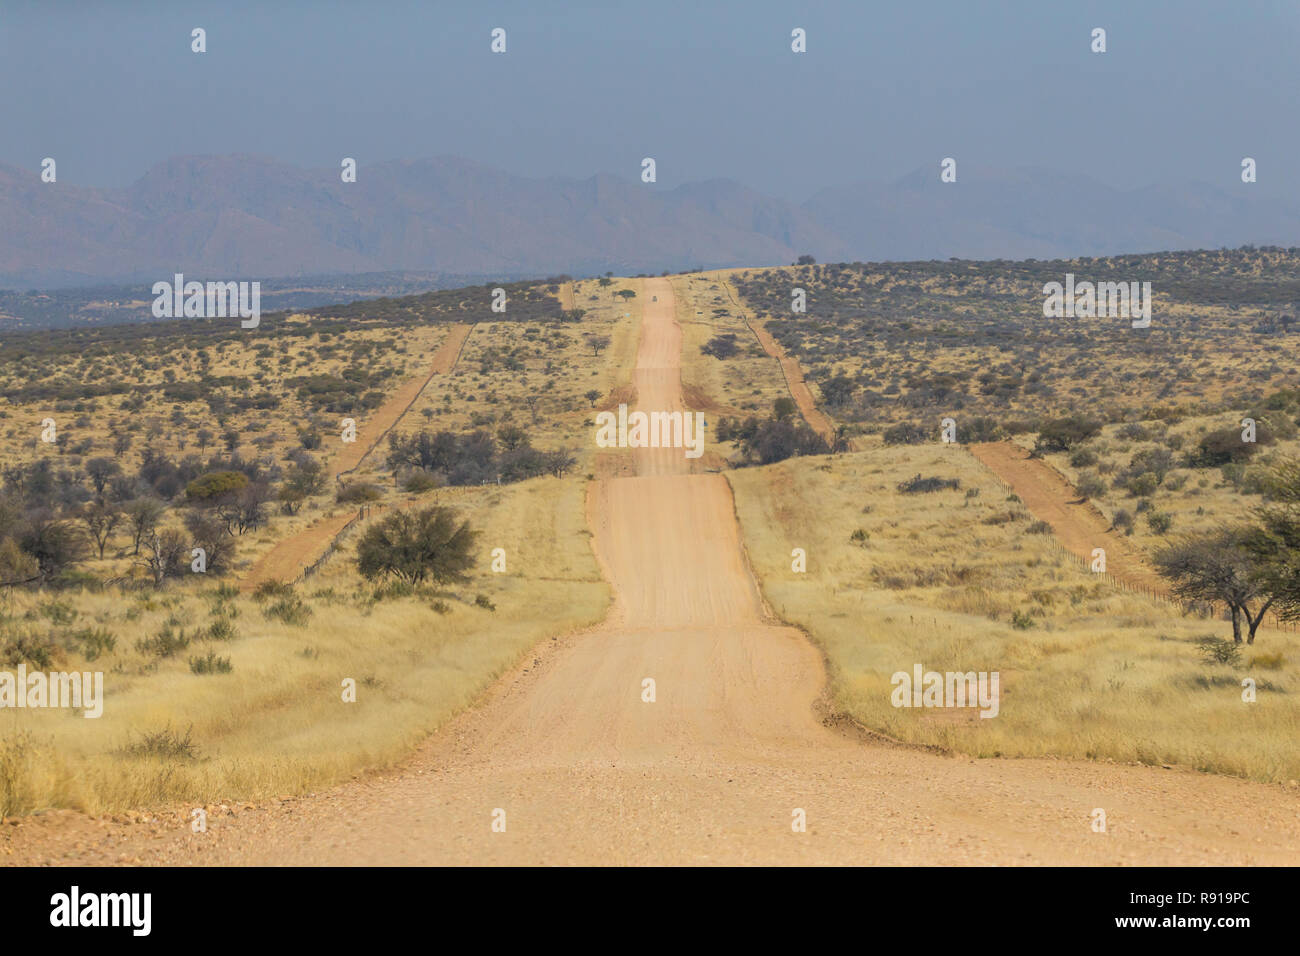 Landschaft von typischen Gelände oder Umwelt in Namibia, Afrika, unbefestigte Straße lang und flach Geradeaus führenden in abgelegenen Bereich Stockfoto